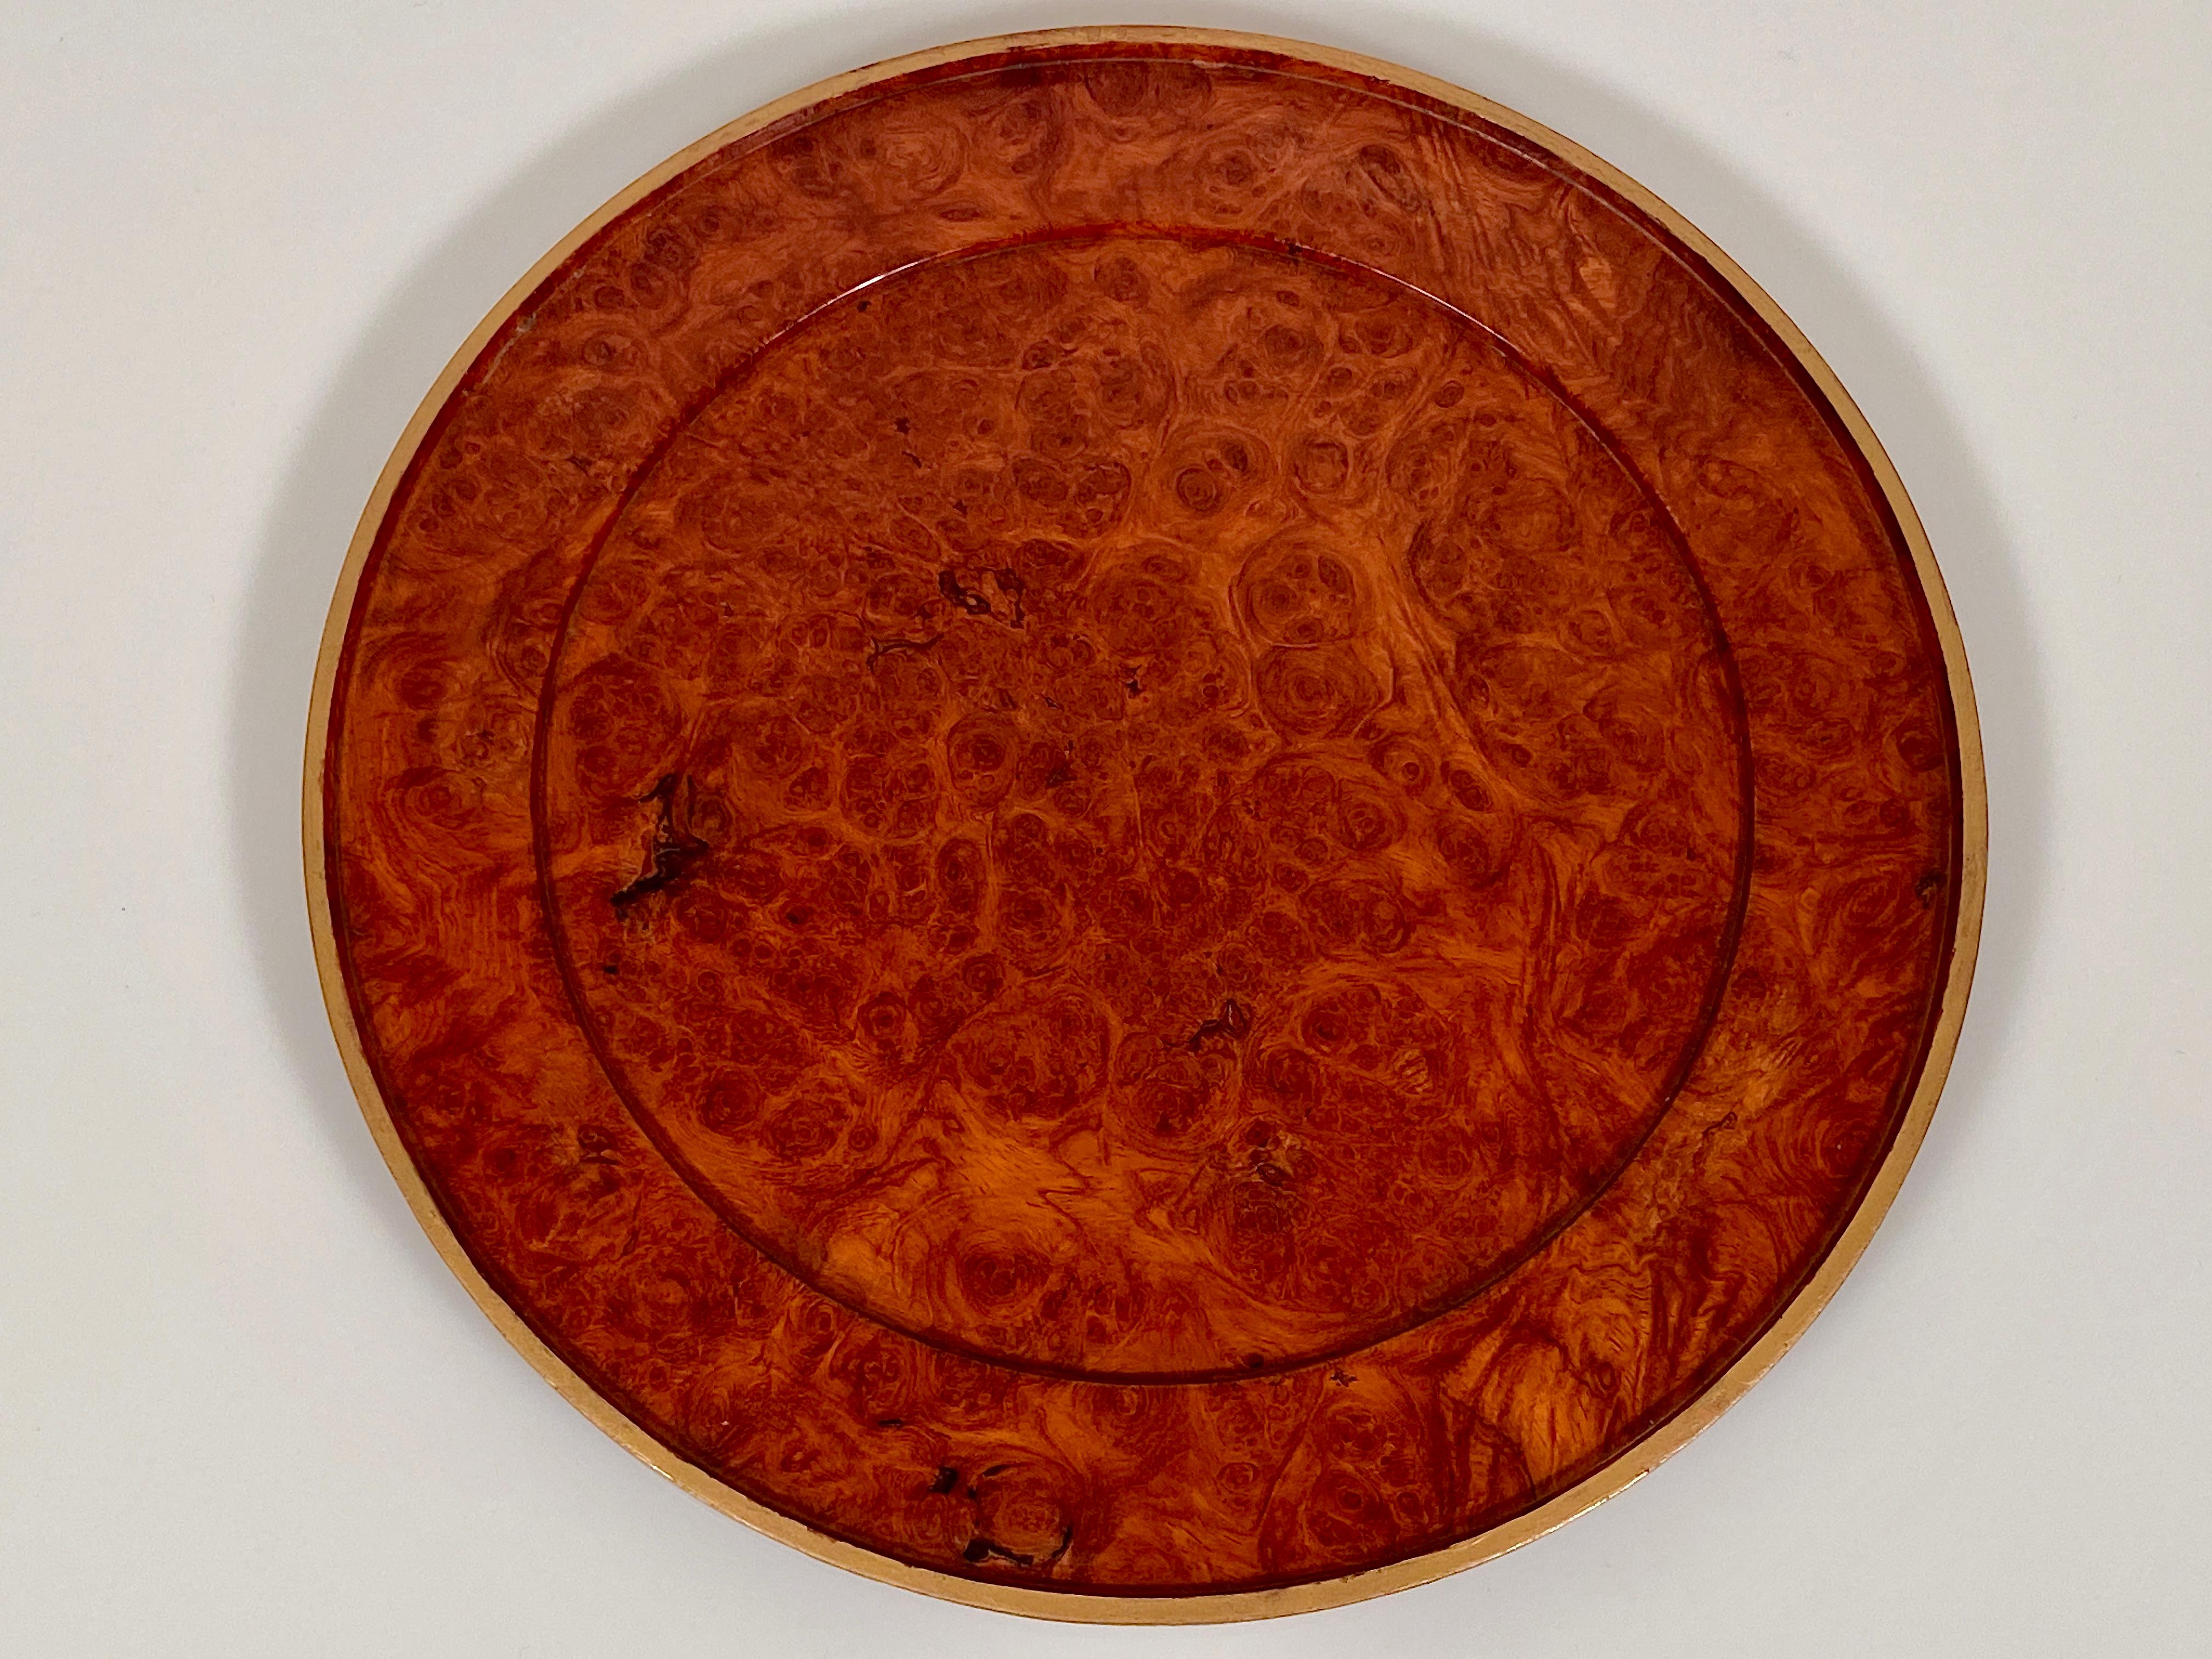 Charger Plates Burr Walnut PlaceMat Carved Wood Vintage Modernist 5